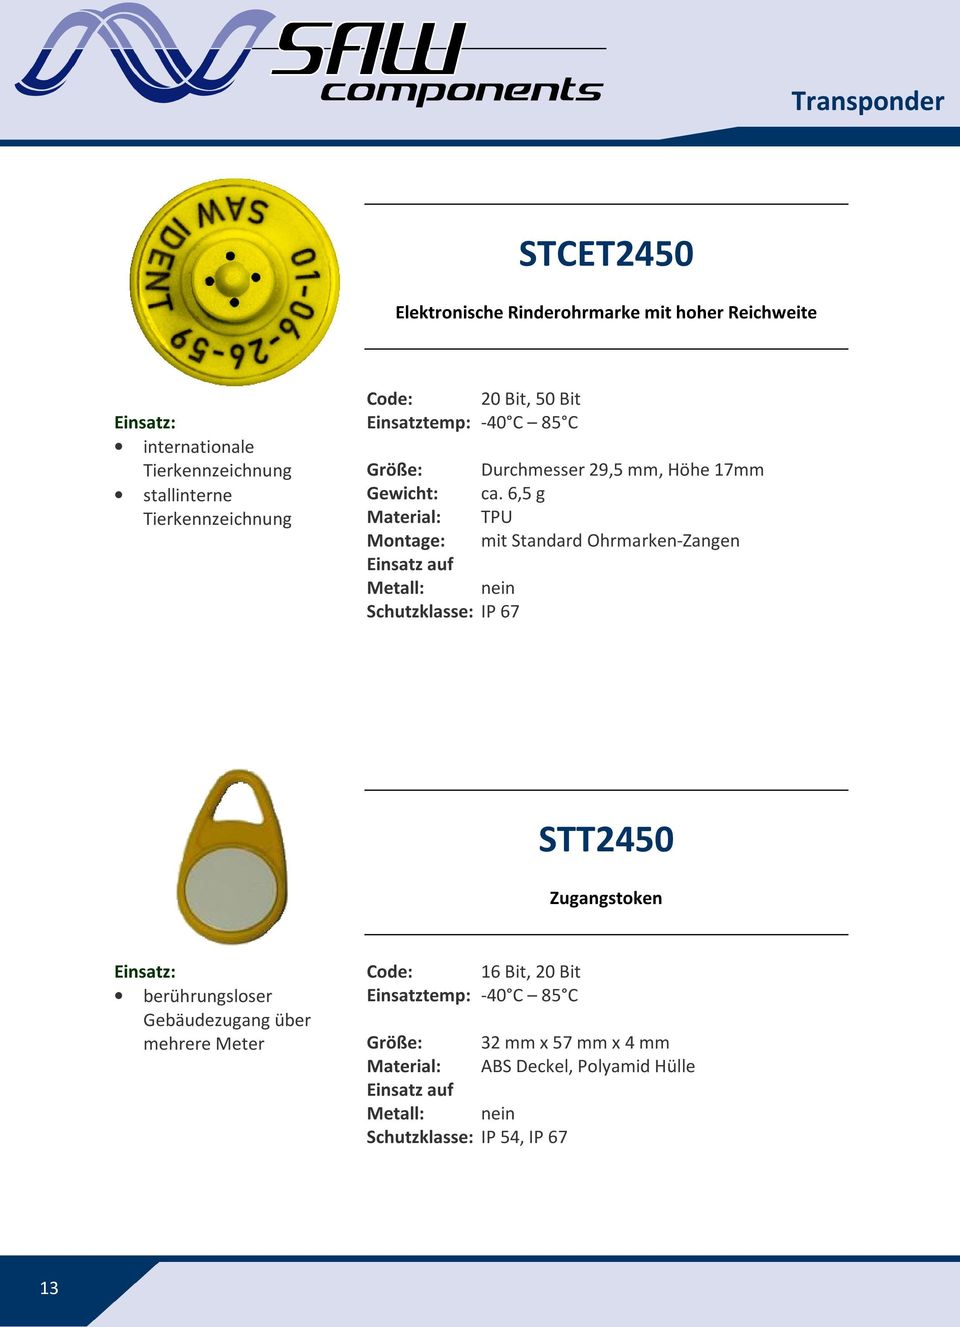 6,5 g Material: TPU Montage: mit Standard Ohrmarken-Zangen Einsatz auf Metall: nein Schutzklasse: IP 67 STT2450 Zugangstoken berührungsloser